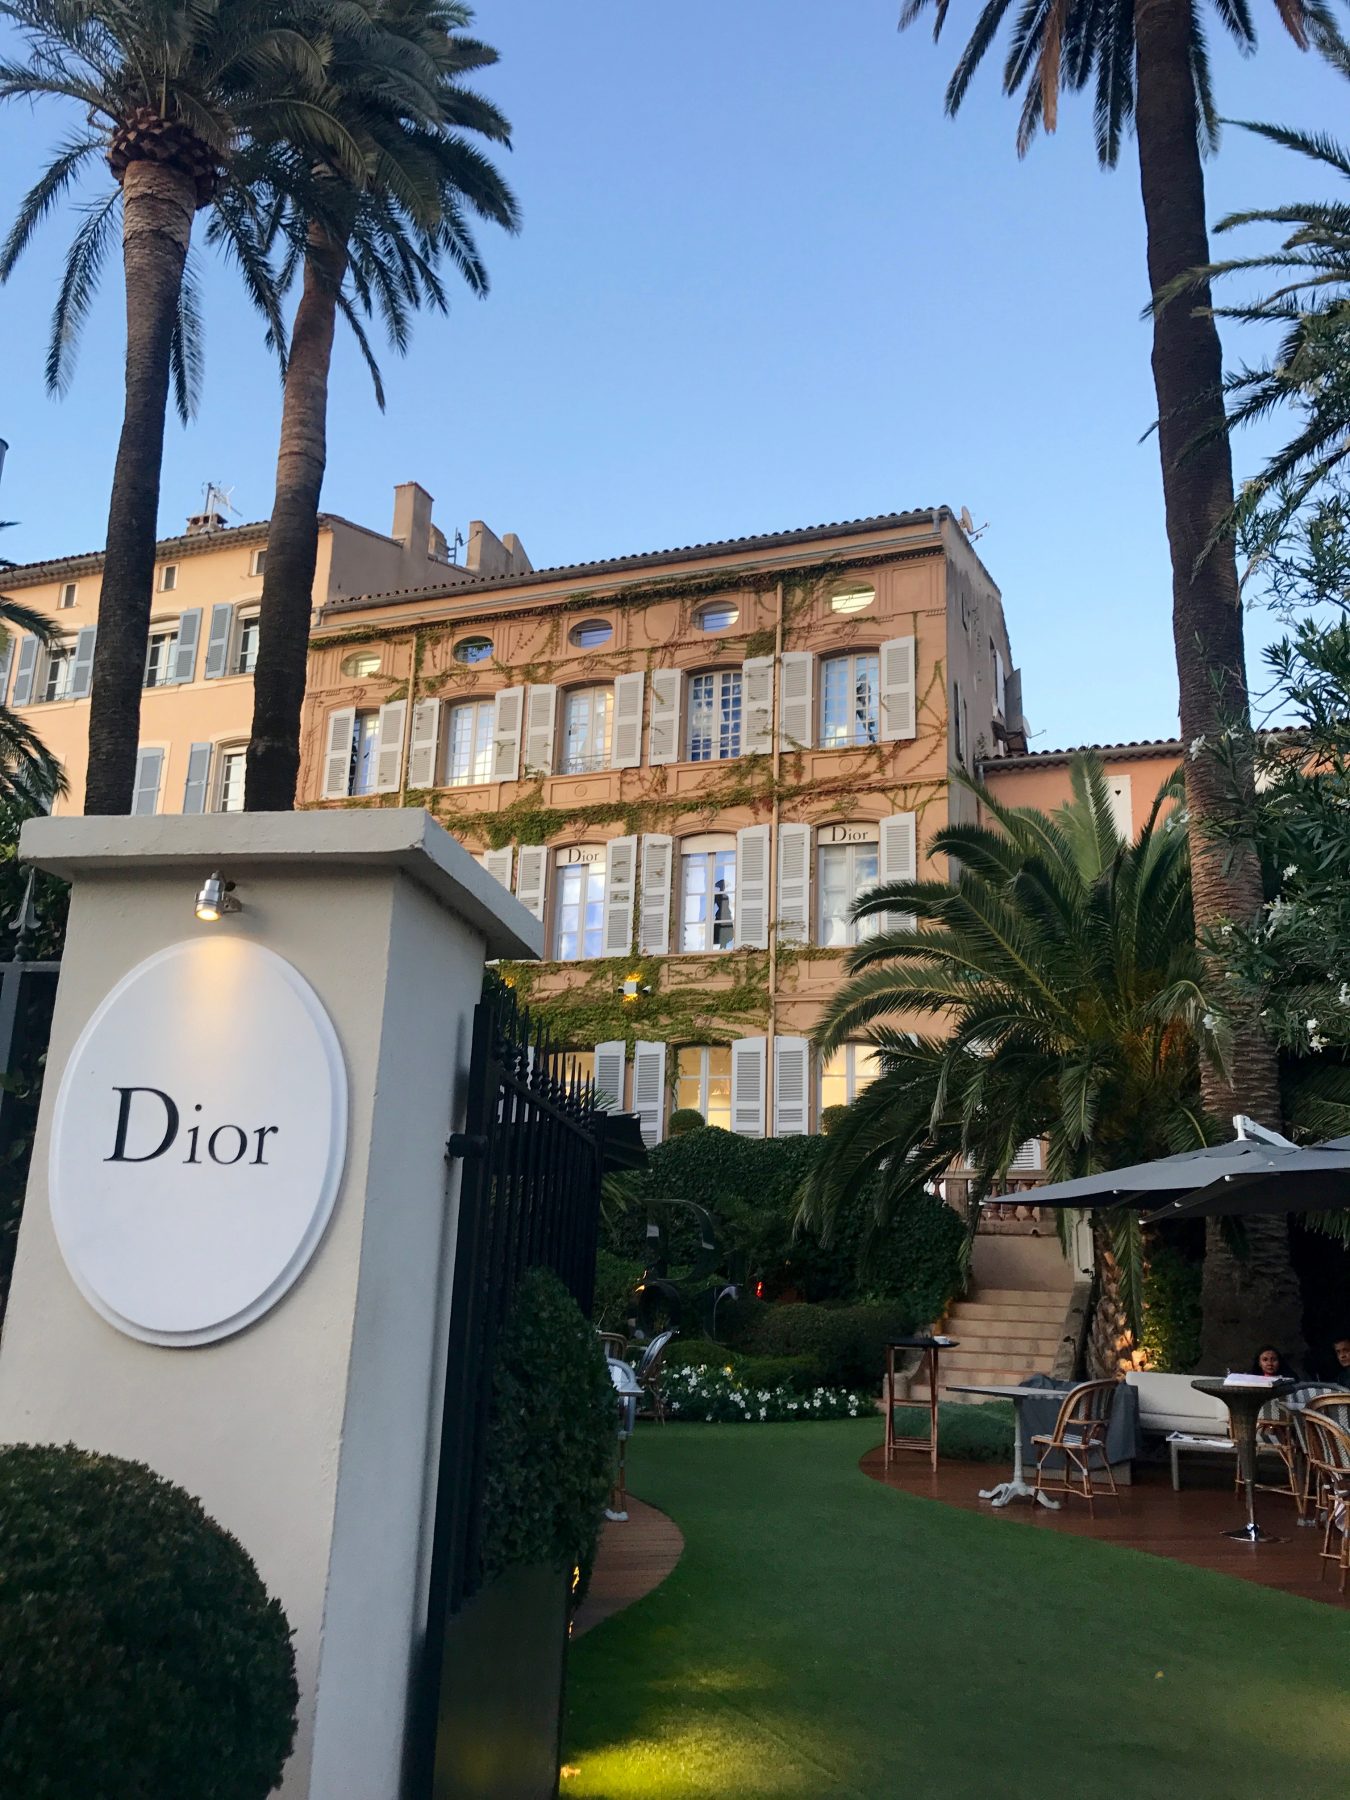 Dior restaurant